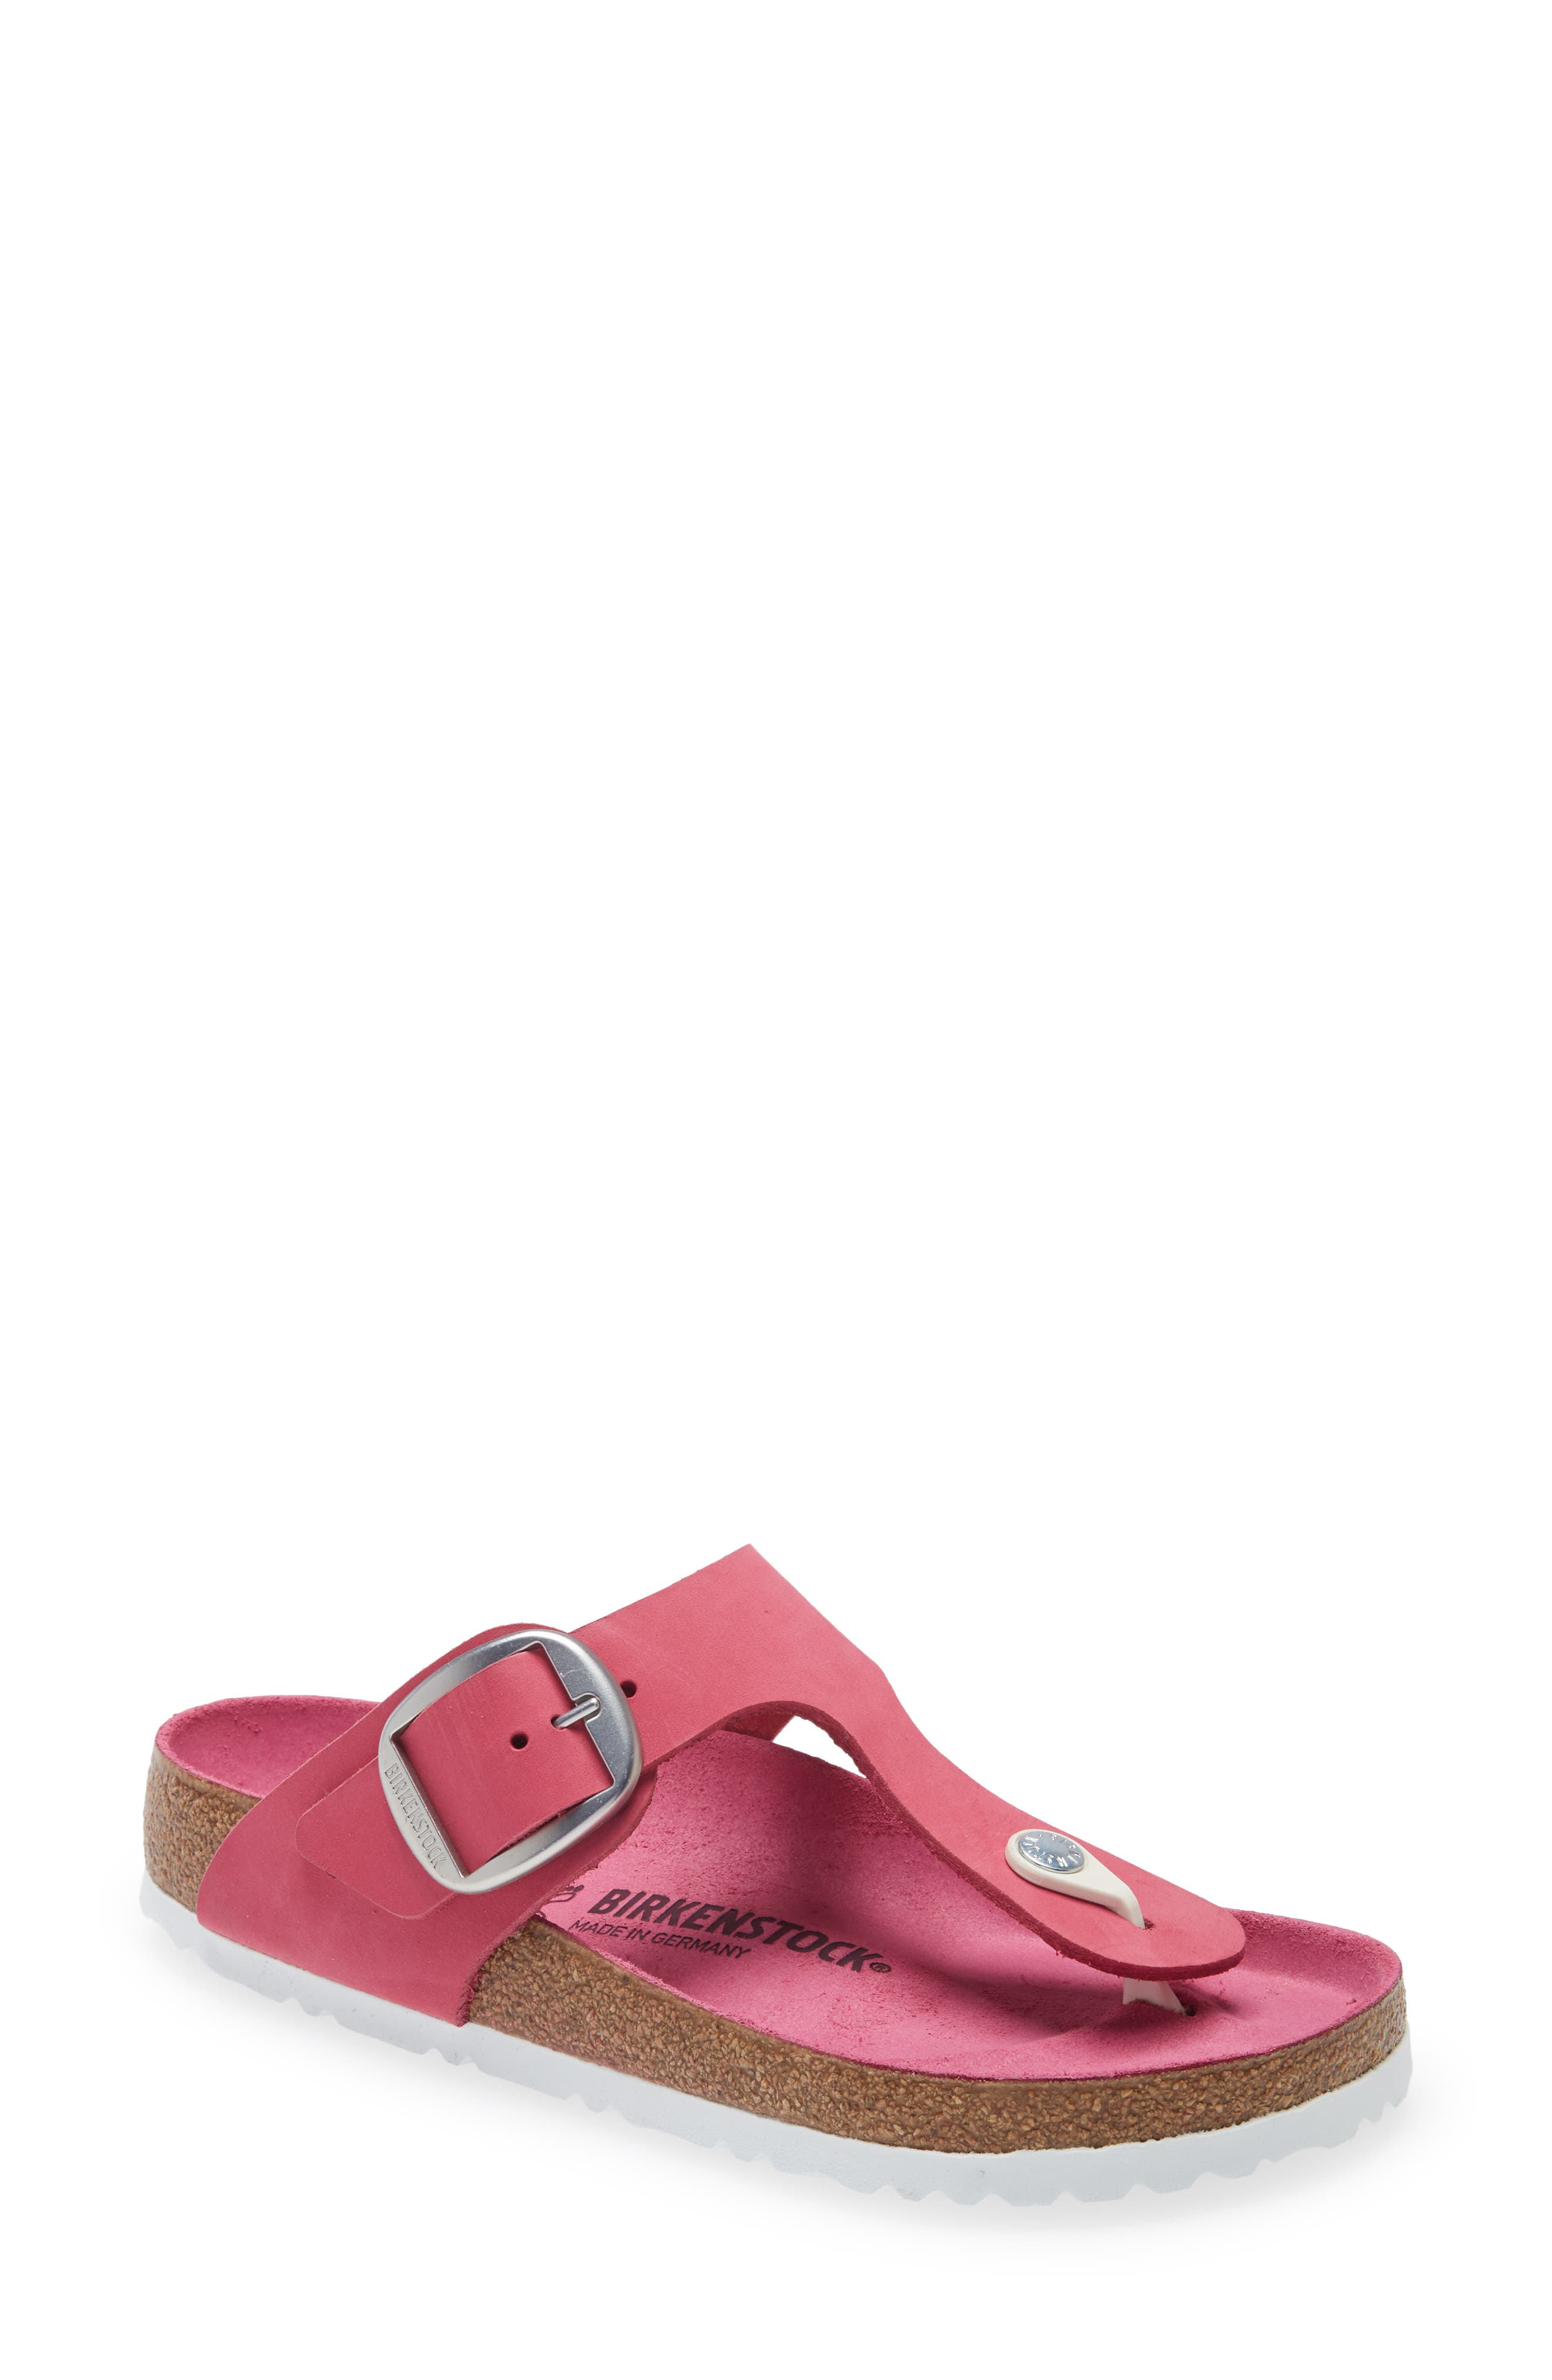 birkenstock women's pink sandals